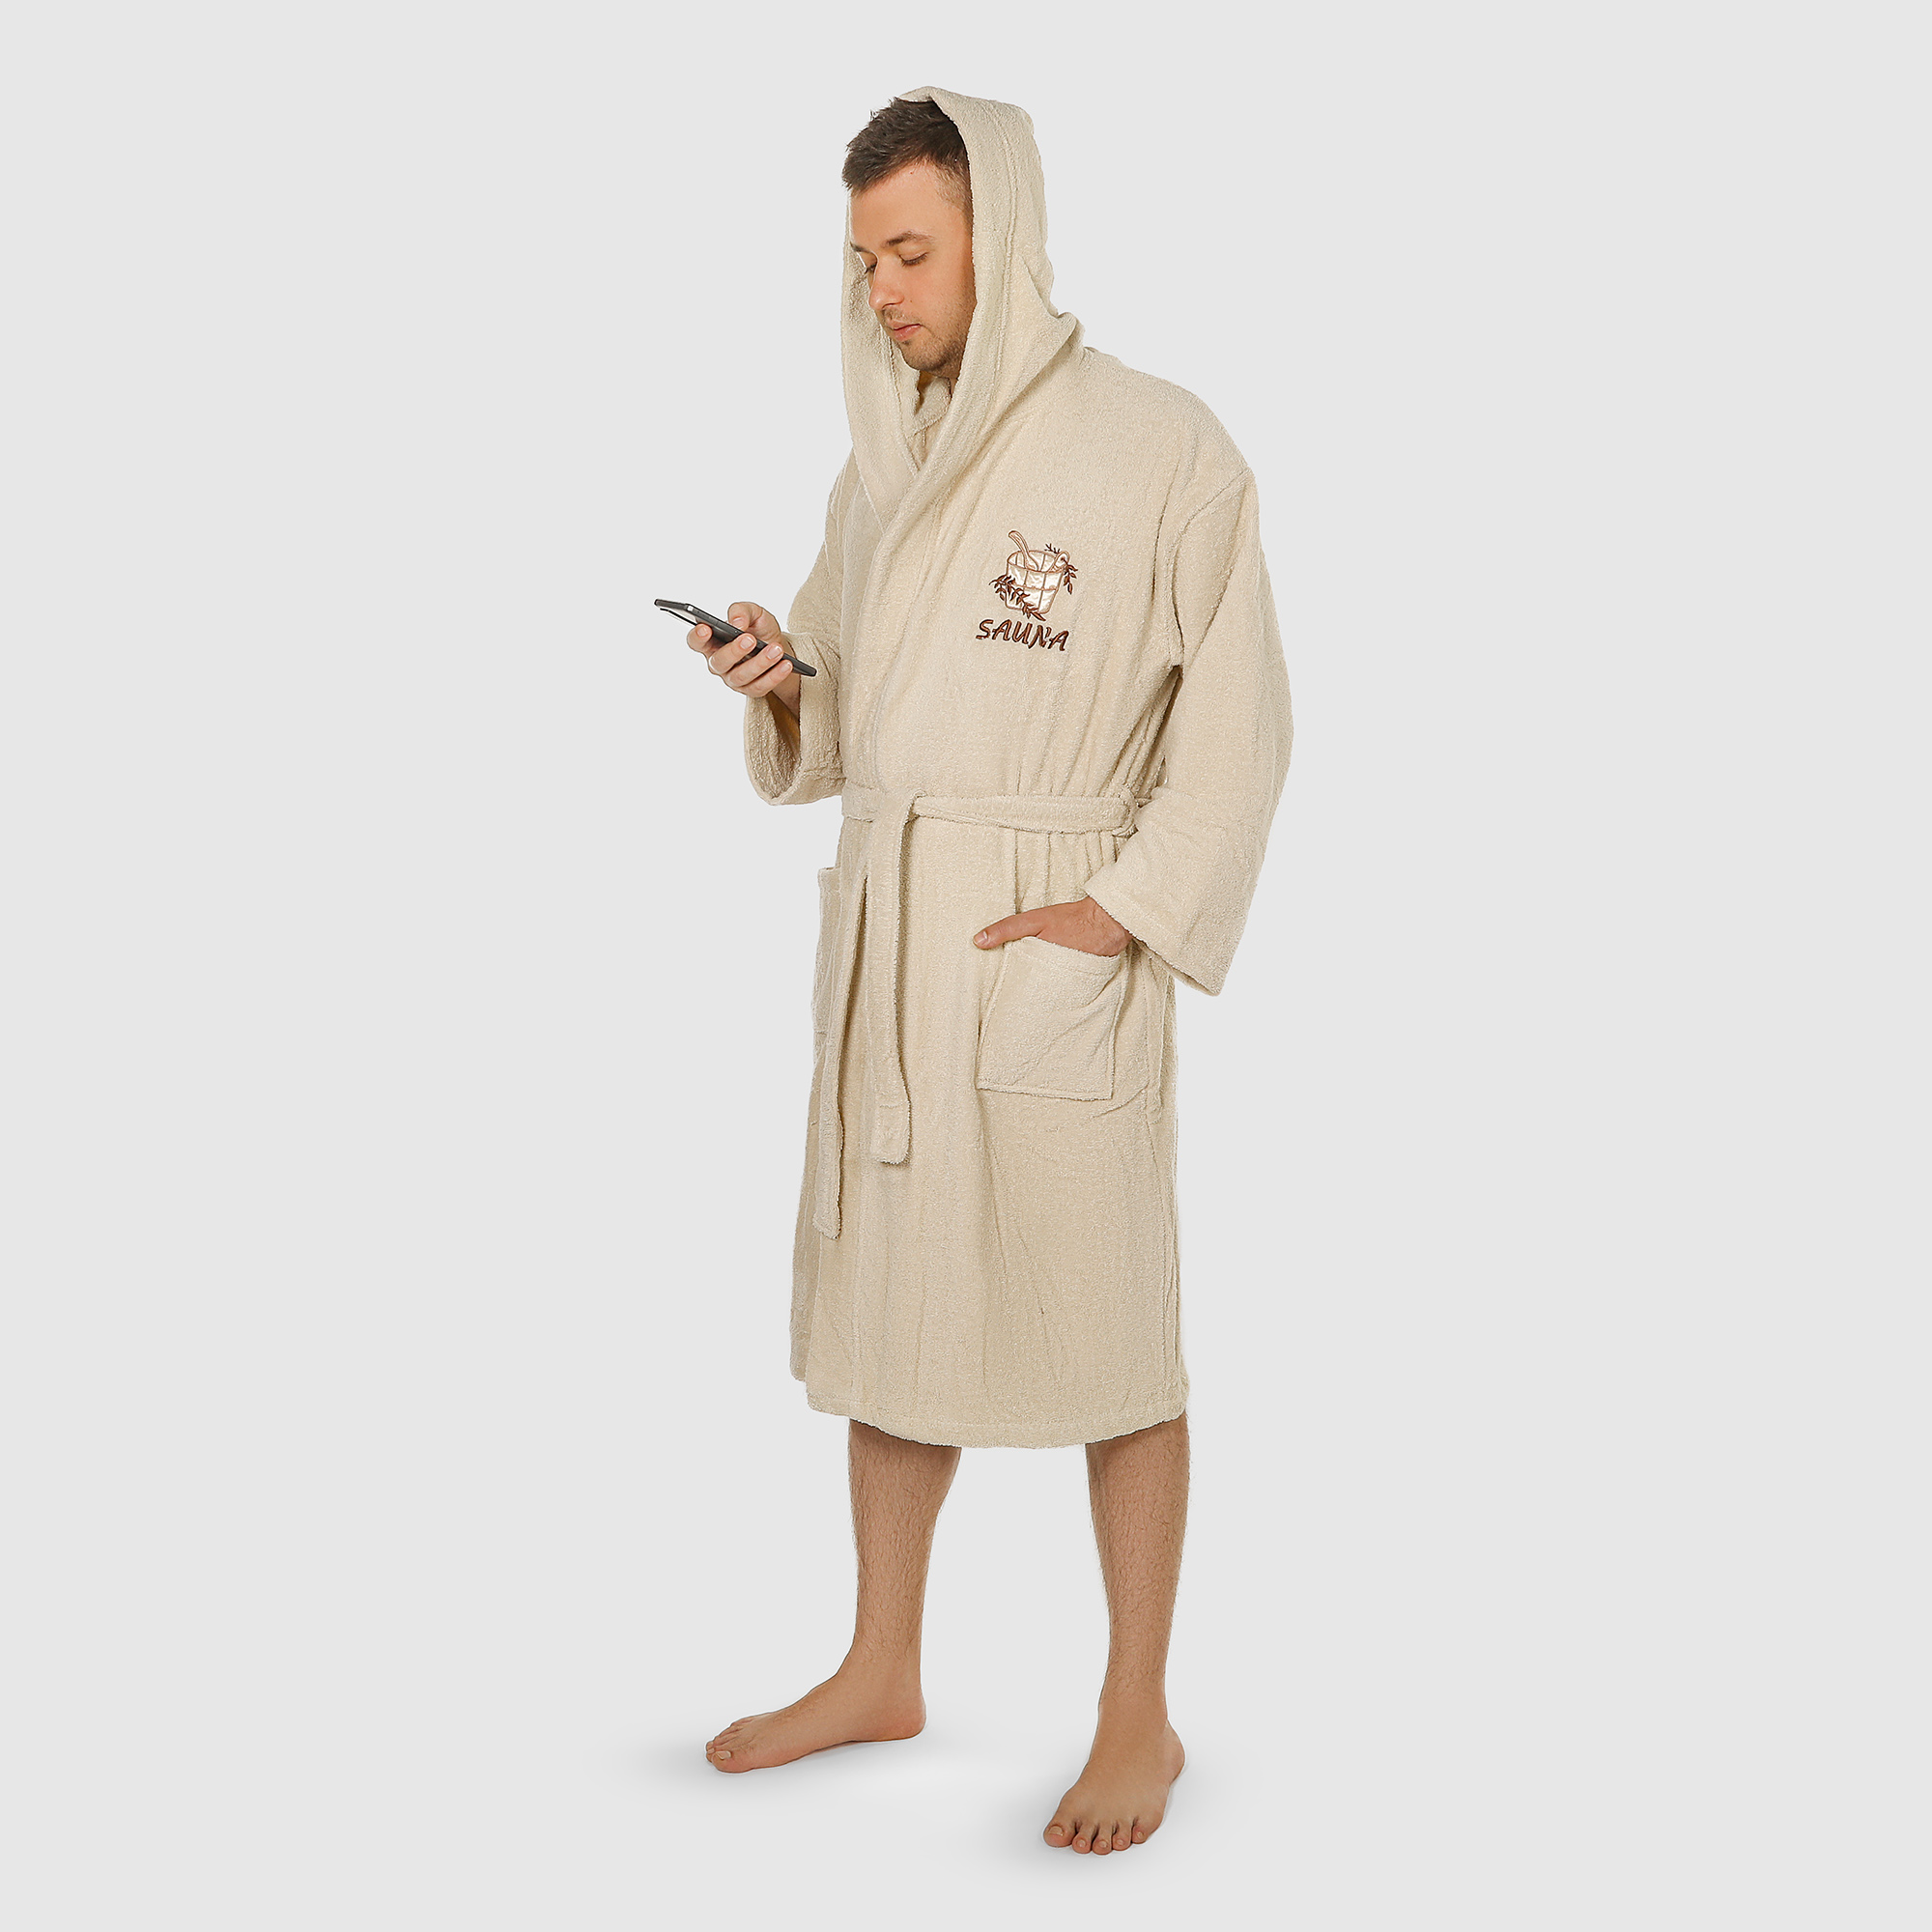 Халат мужской Asil Sauna brown XL махровый с капюшоном халат мужской asil sauna brown xxxl вафельный с капюшоном